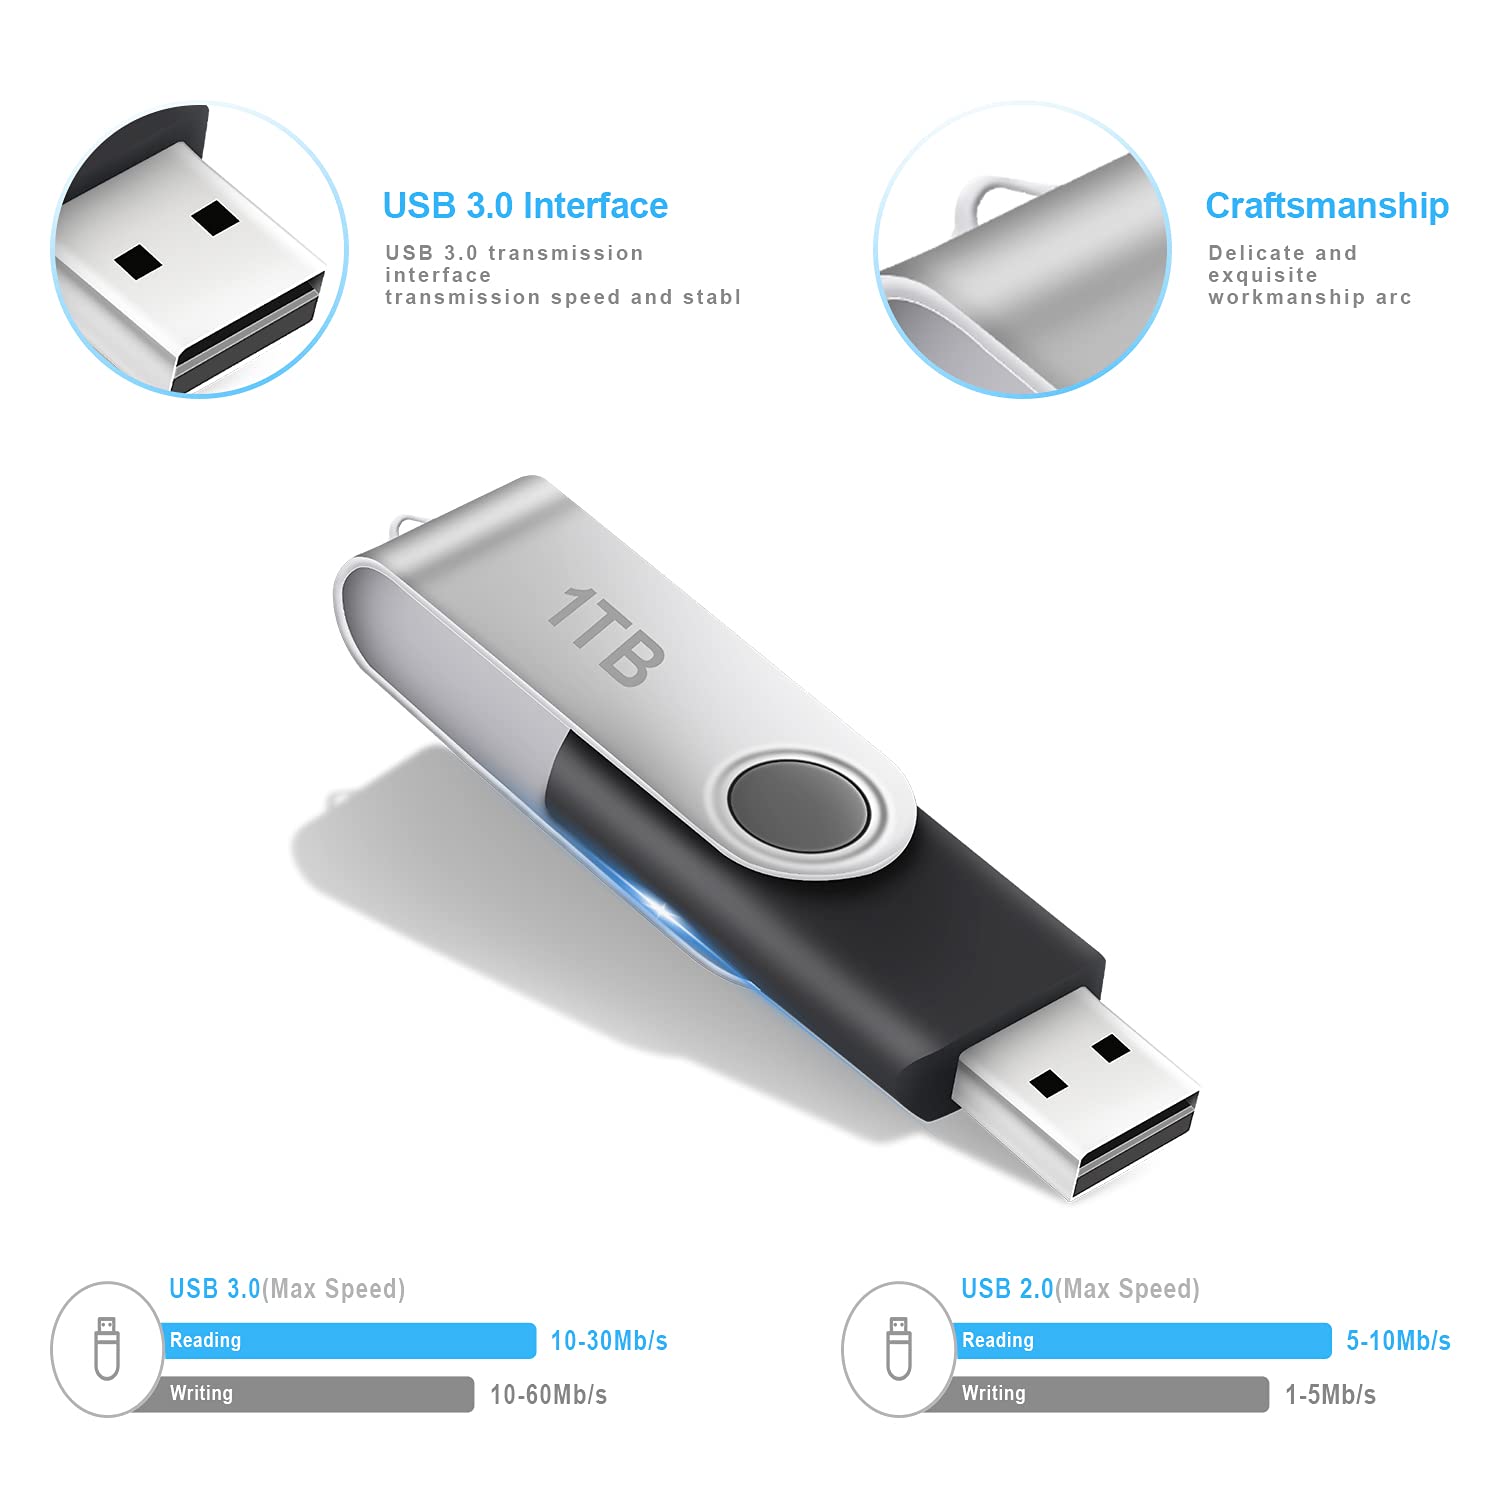 USB 3.0 Flash Drive 1TB, Portable Thumb Drives 1000GB: USB 3.0 Memory Stick, Ultra Large Storage USB 3.0 Drive, High-Speed 1TB Jump Drive, 1000GB Swivel Design Zip Drive for PC/Laptop